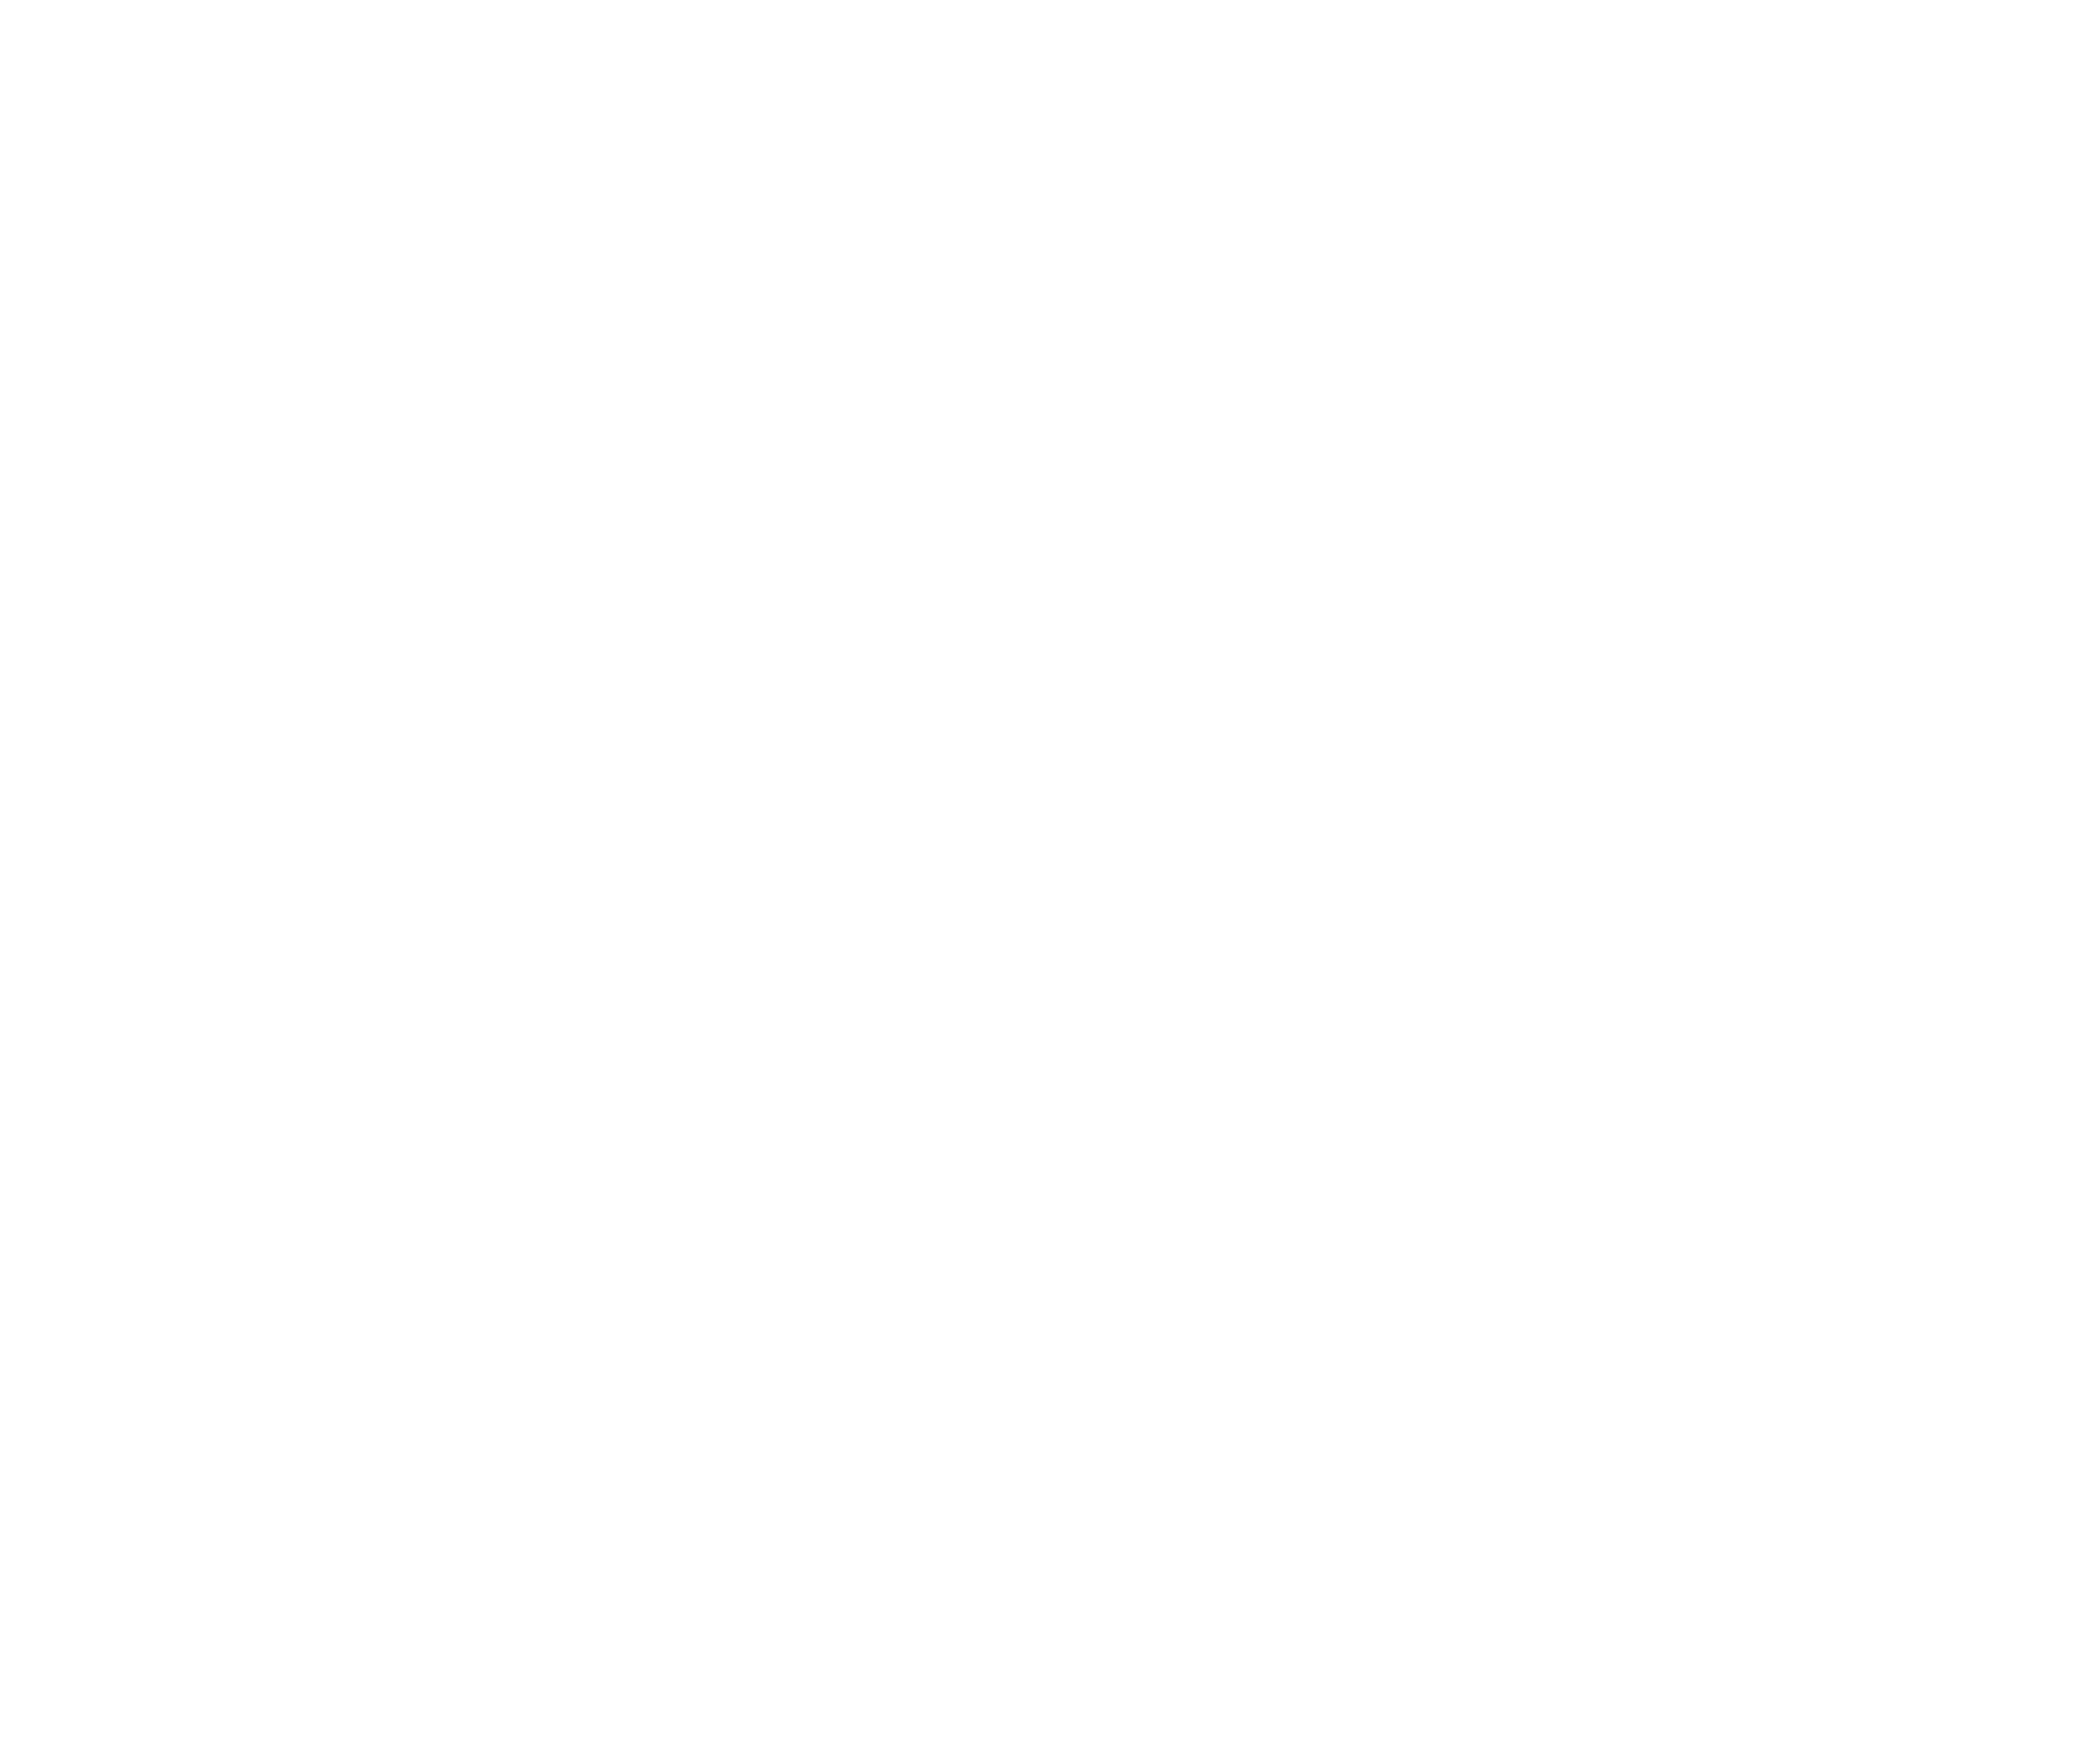 Le logo de "La Niche" avec son slogan "Love your pets" qui signifie "Aimez vos animaux"